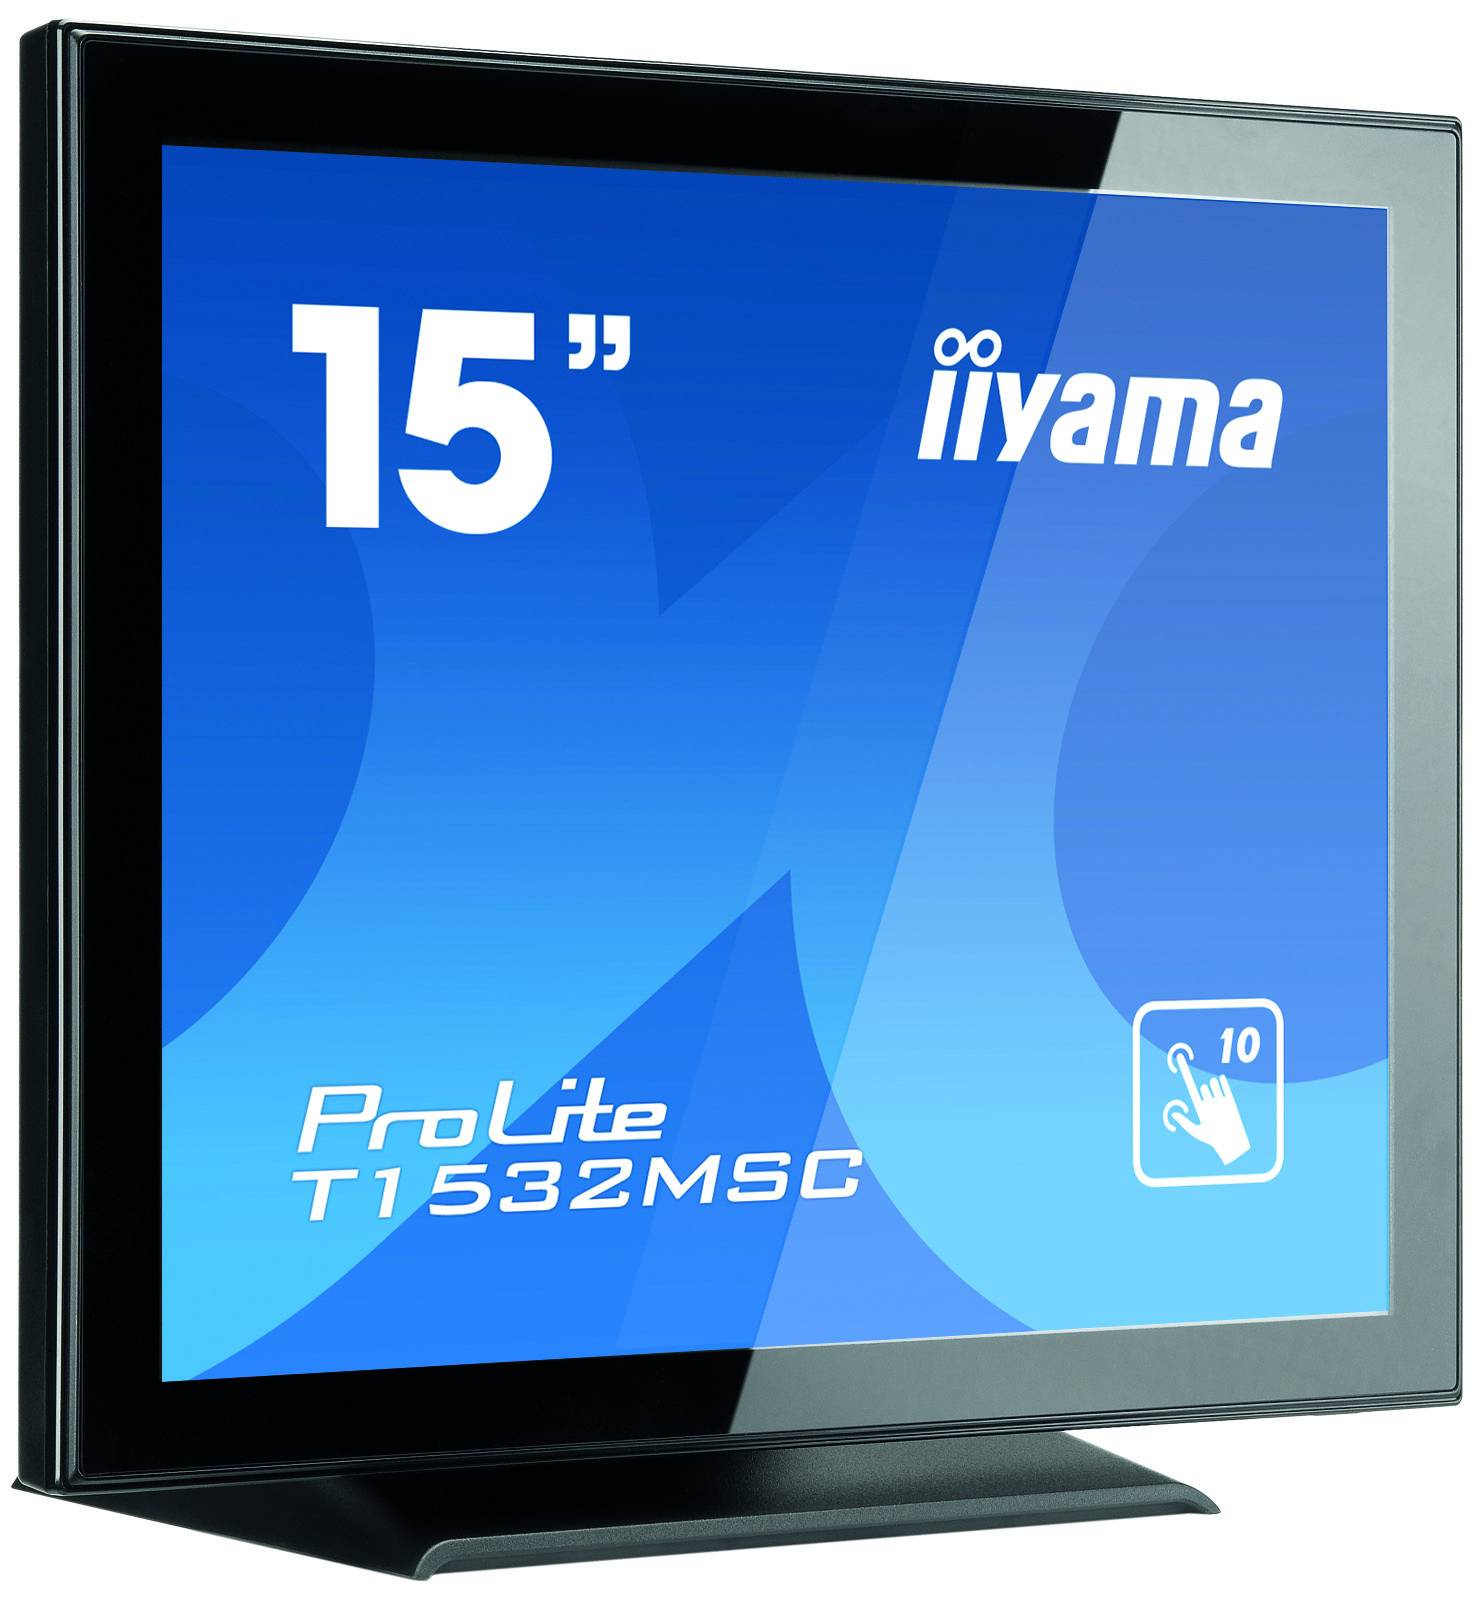 Rca Informatique - image du produit : T1532MSC-B5AG 700:1 8MS BLACK 15IN LCD-TOUCH 1024 X 768 4:3